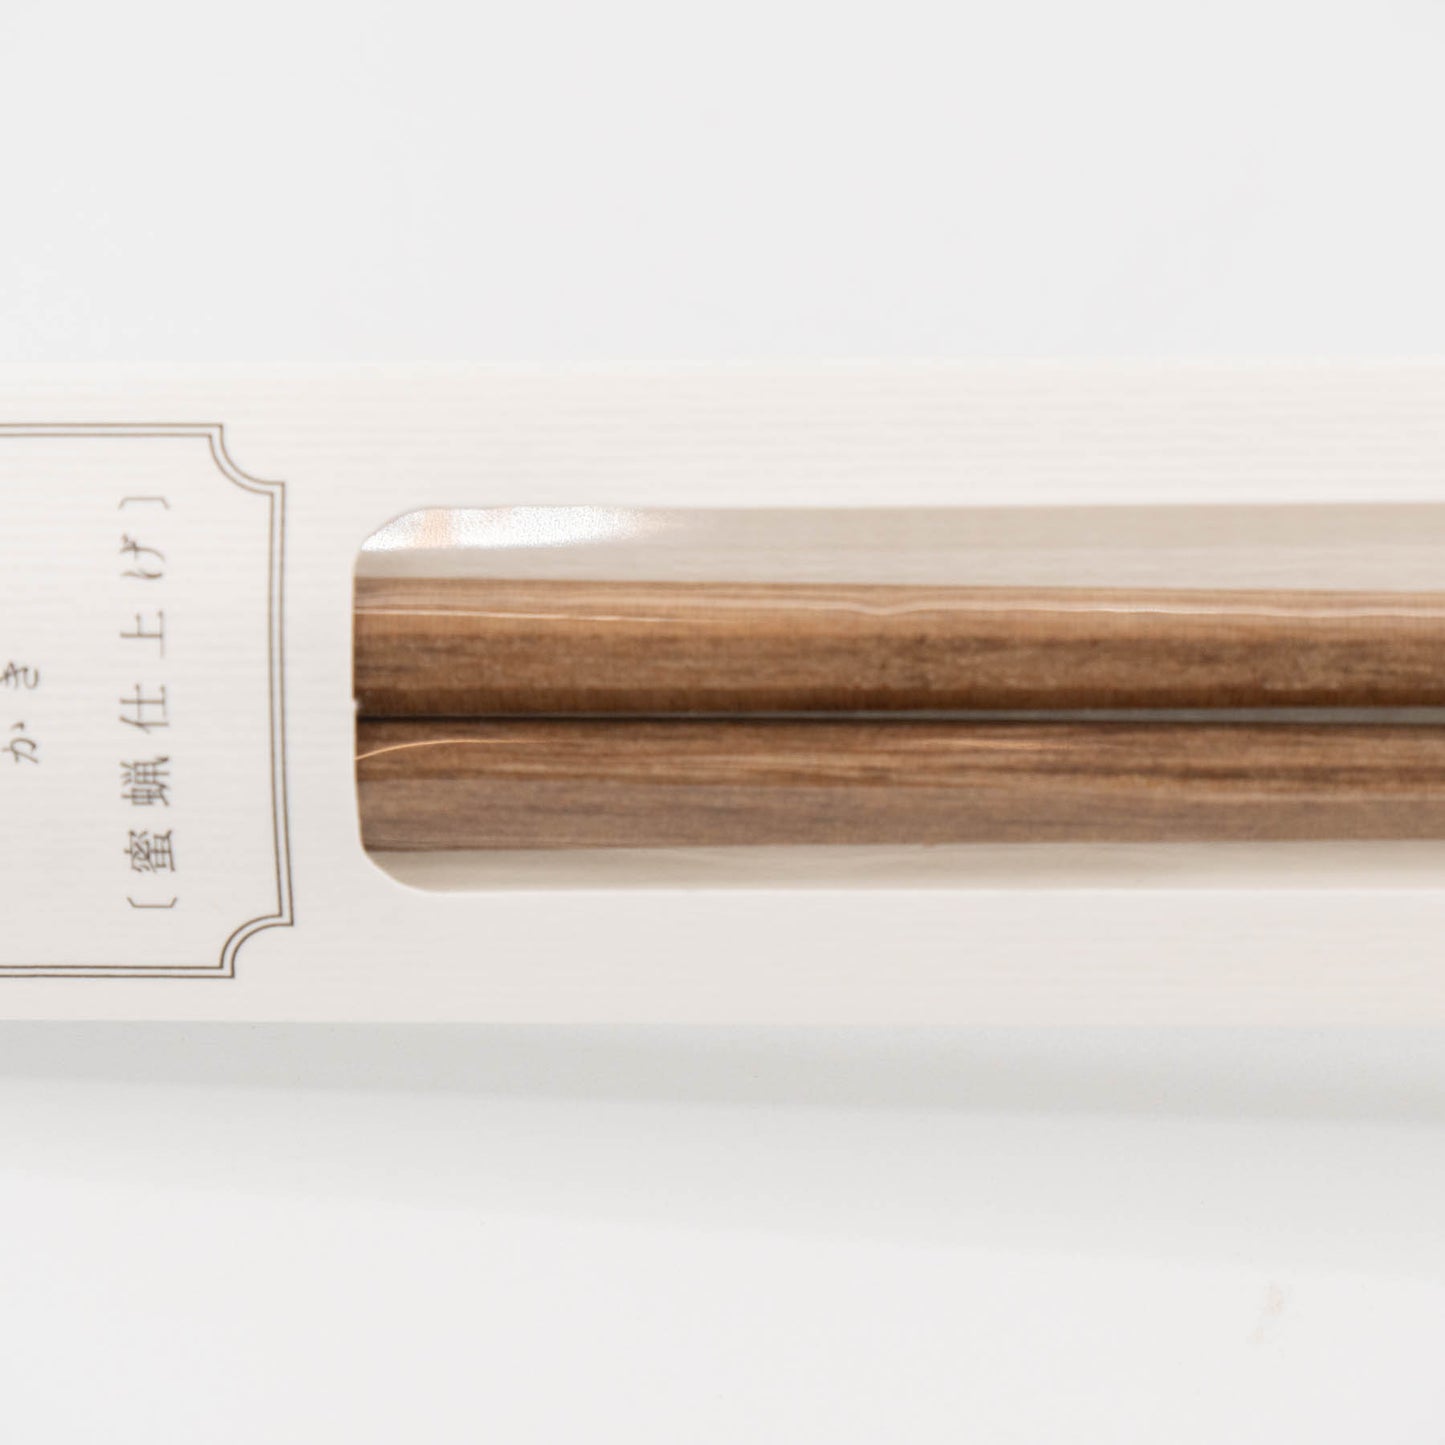 Tetoca - Wooden Chopsticks - Persimmon